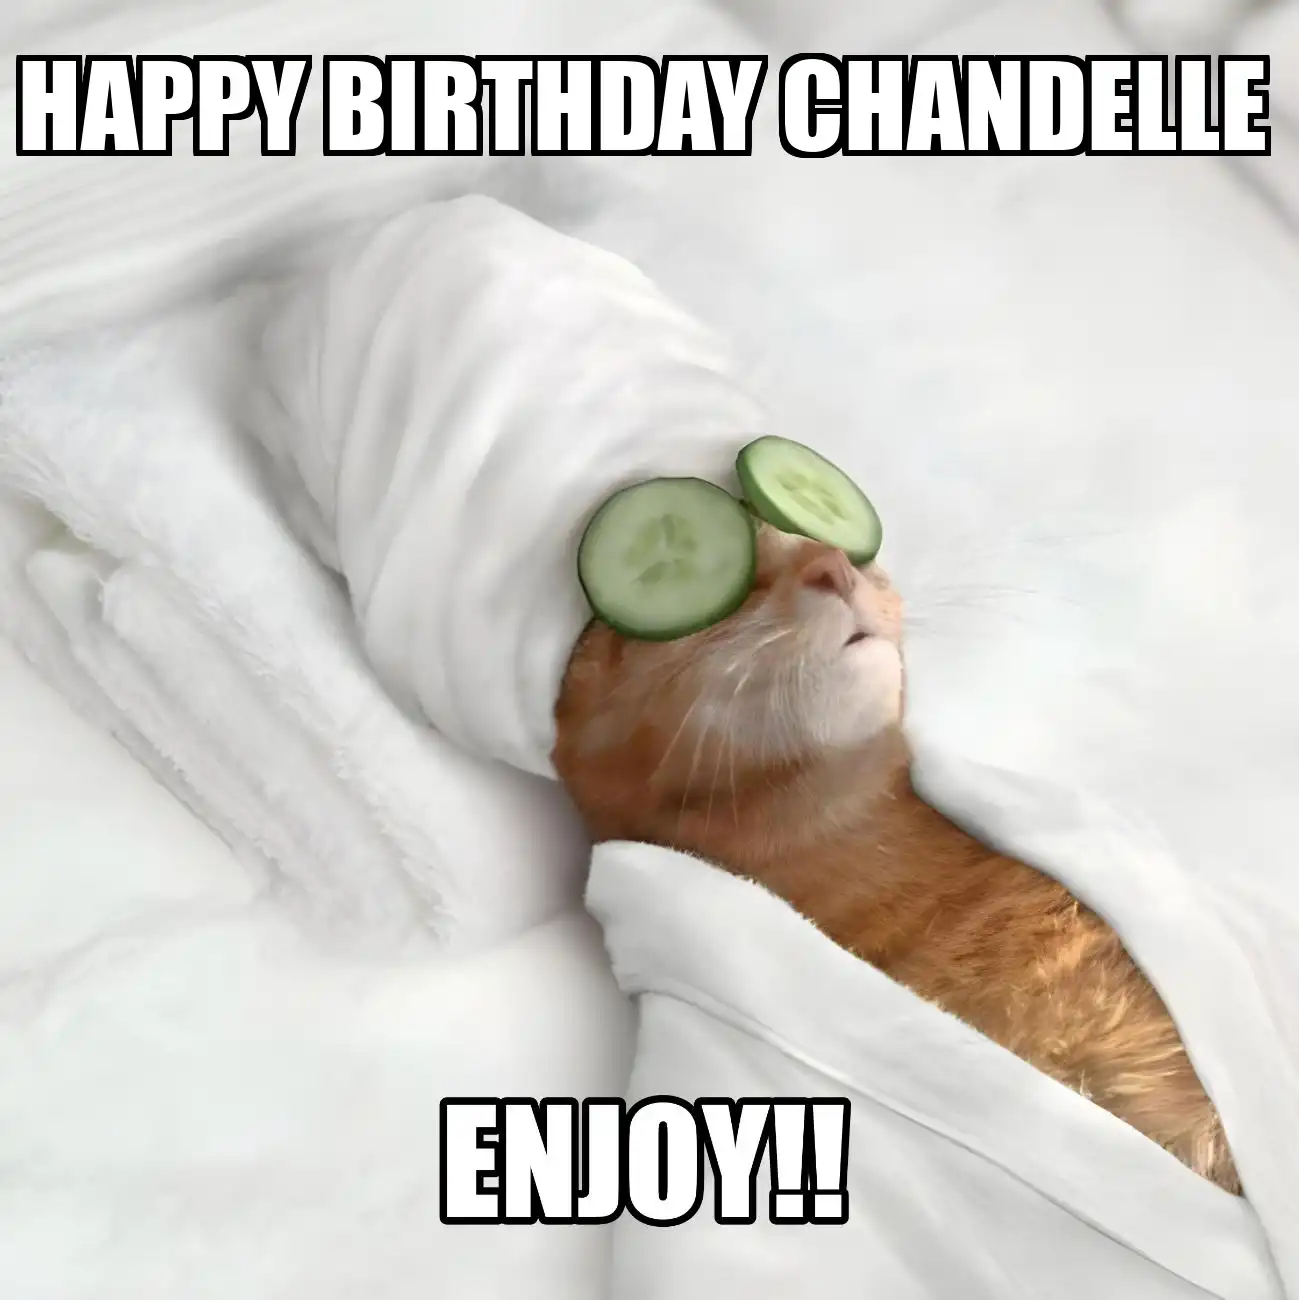 Happy Birthday Chandelle Enjoy Cat Meme